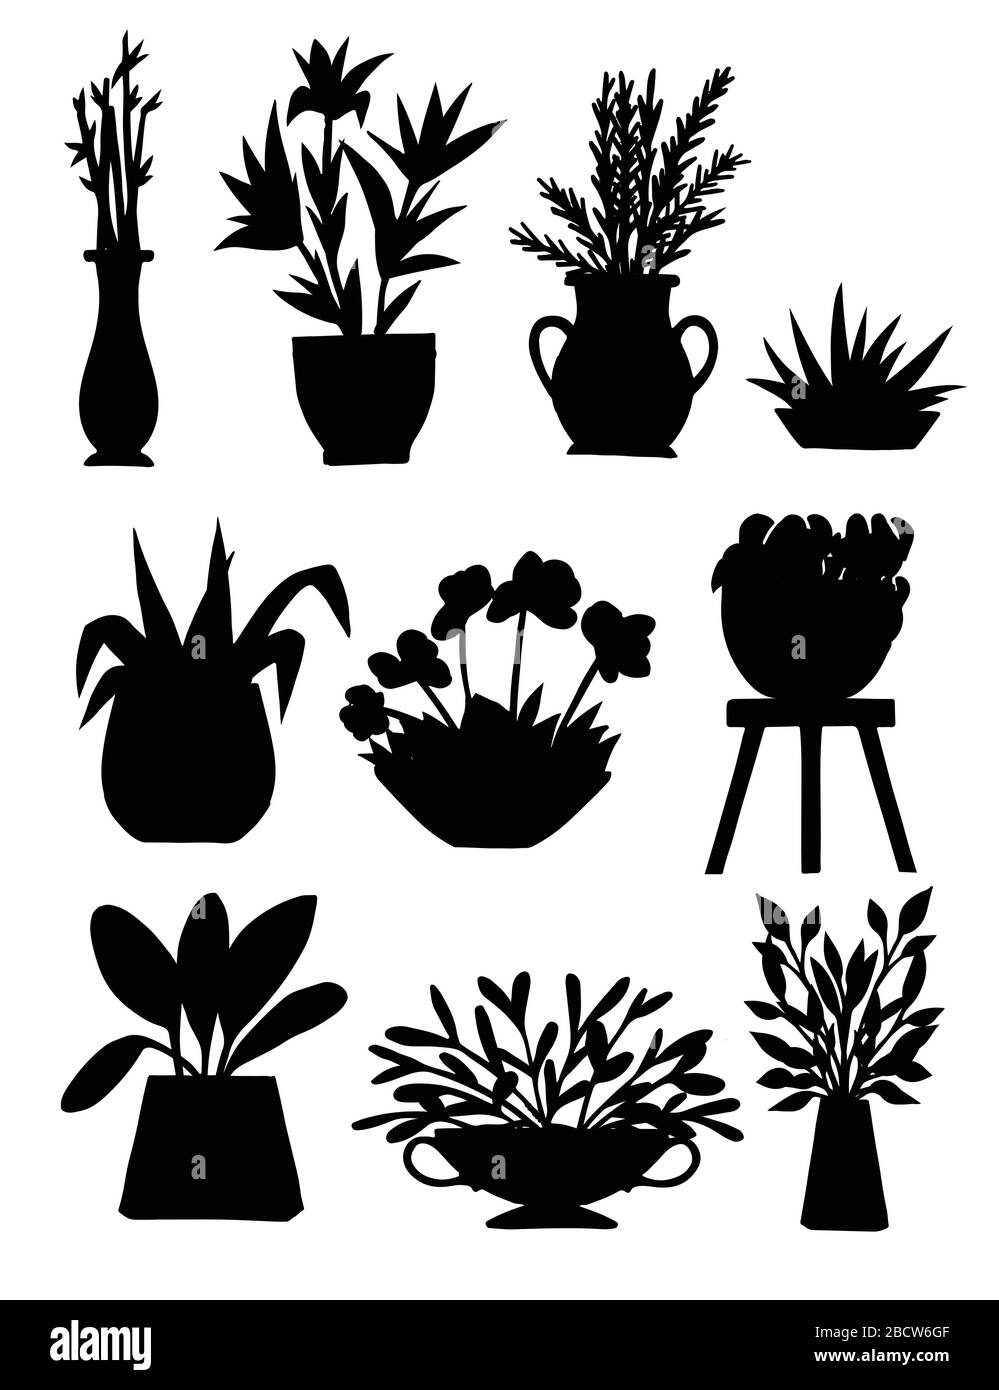 Schwarze Silhouette Heim dekorativen und Outdoor-Garten Pflanzen in Töpfen  Set Pflanzen flache Vektor-Illustration isoliert auf weißem Hintergrund  Stock-Vektorgrafik - Alamy